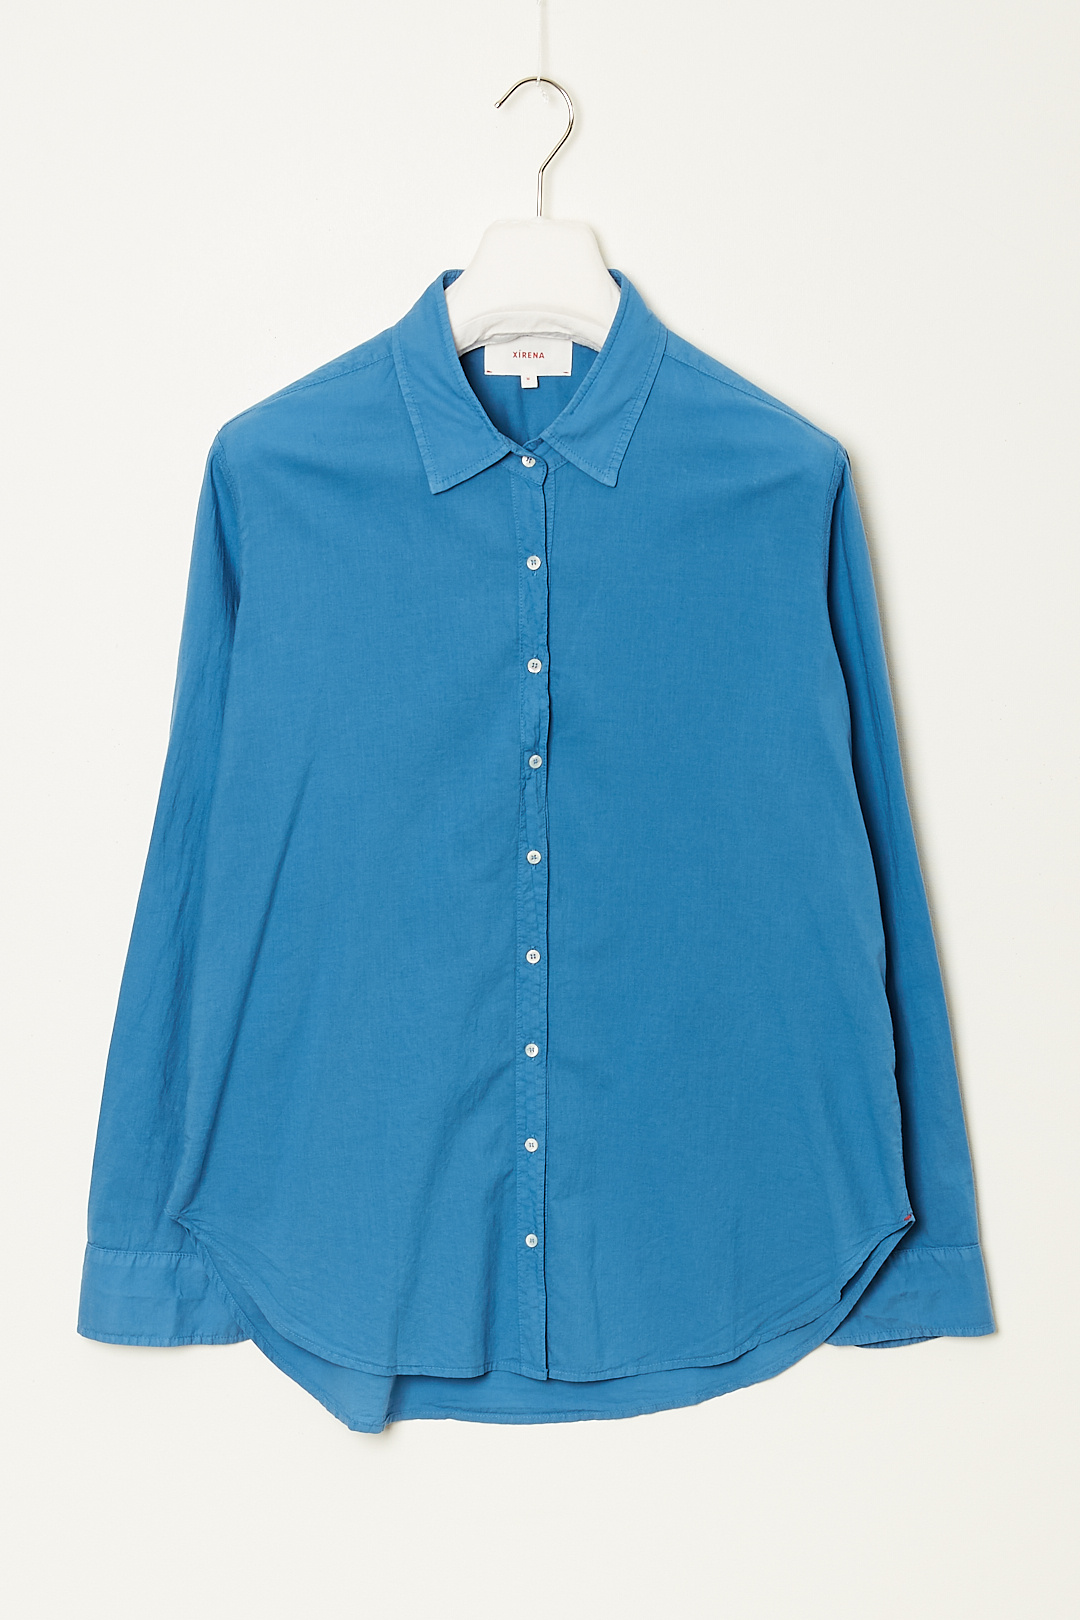 Xirena - Beau cotton poplin shirt